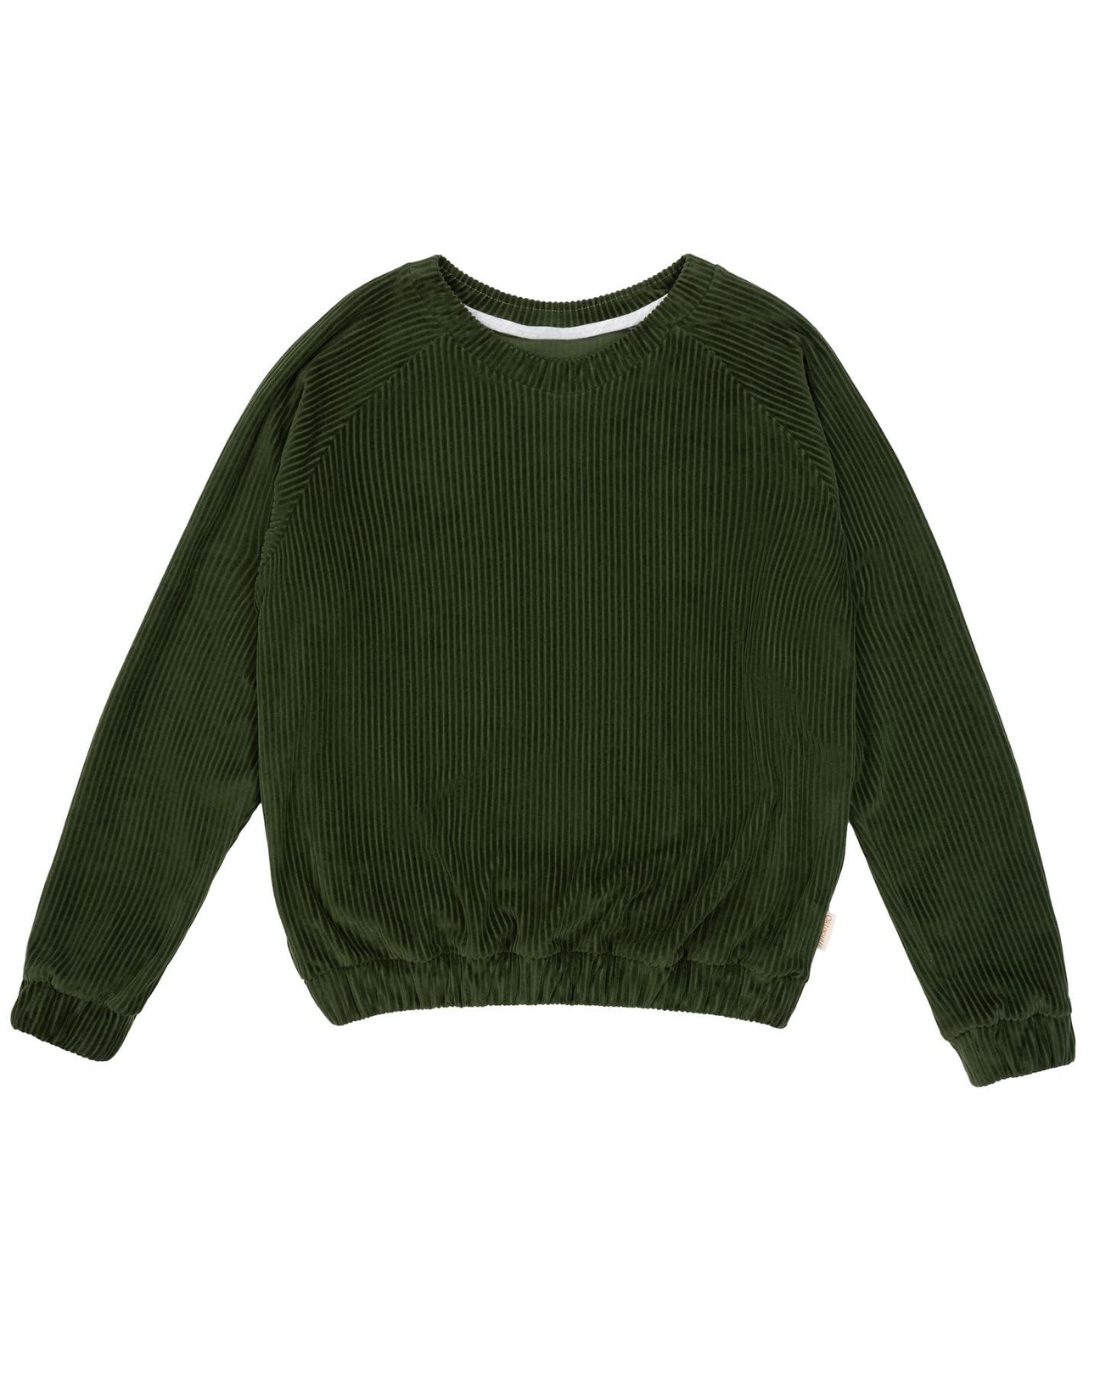 Fairer Unisex Sweater aus Cordnicki in der farbe Dunkelgrün aus Bio-Baumwolle von der Marke Oktopulli